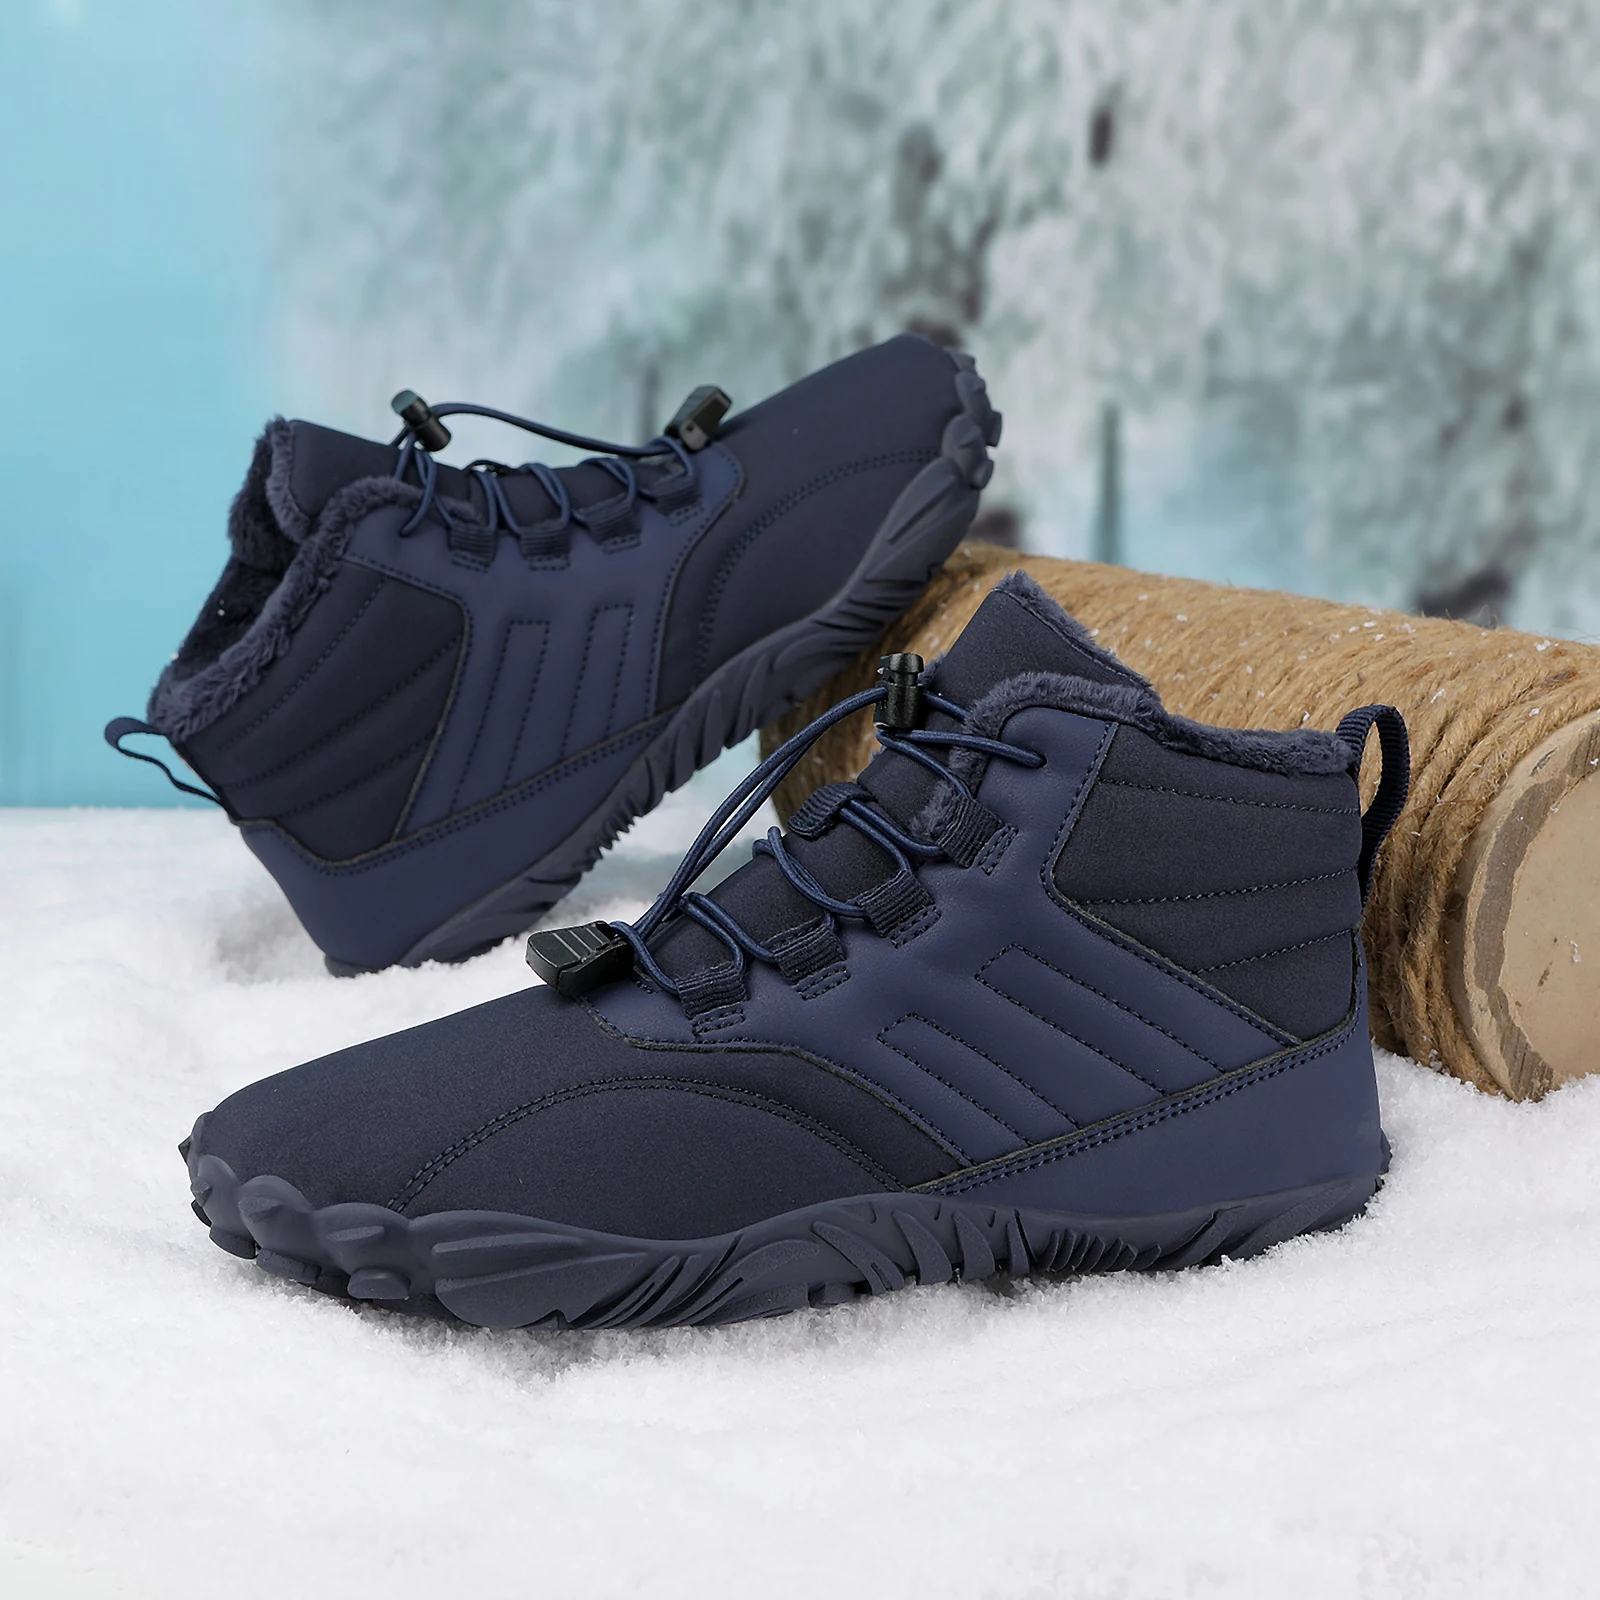 בחורף יחף גברים מגפי חורף עמיד למים נעלי קרסול שלג נעלי קטיפה נעלי הליכה חמים נעלי ספורט גודל גדול 46 נעליים5